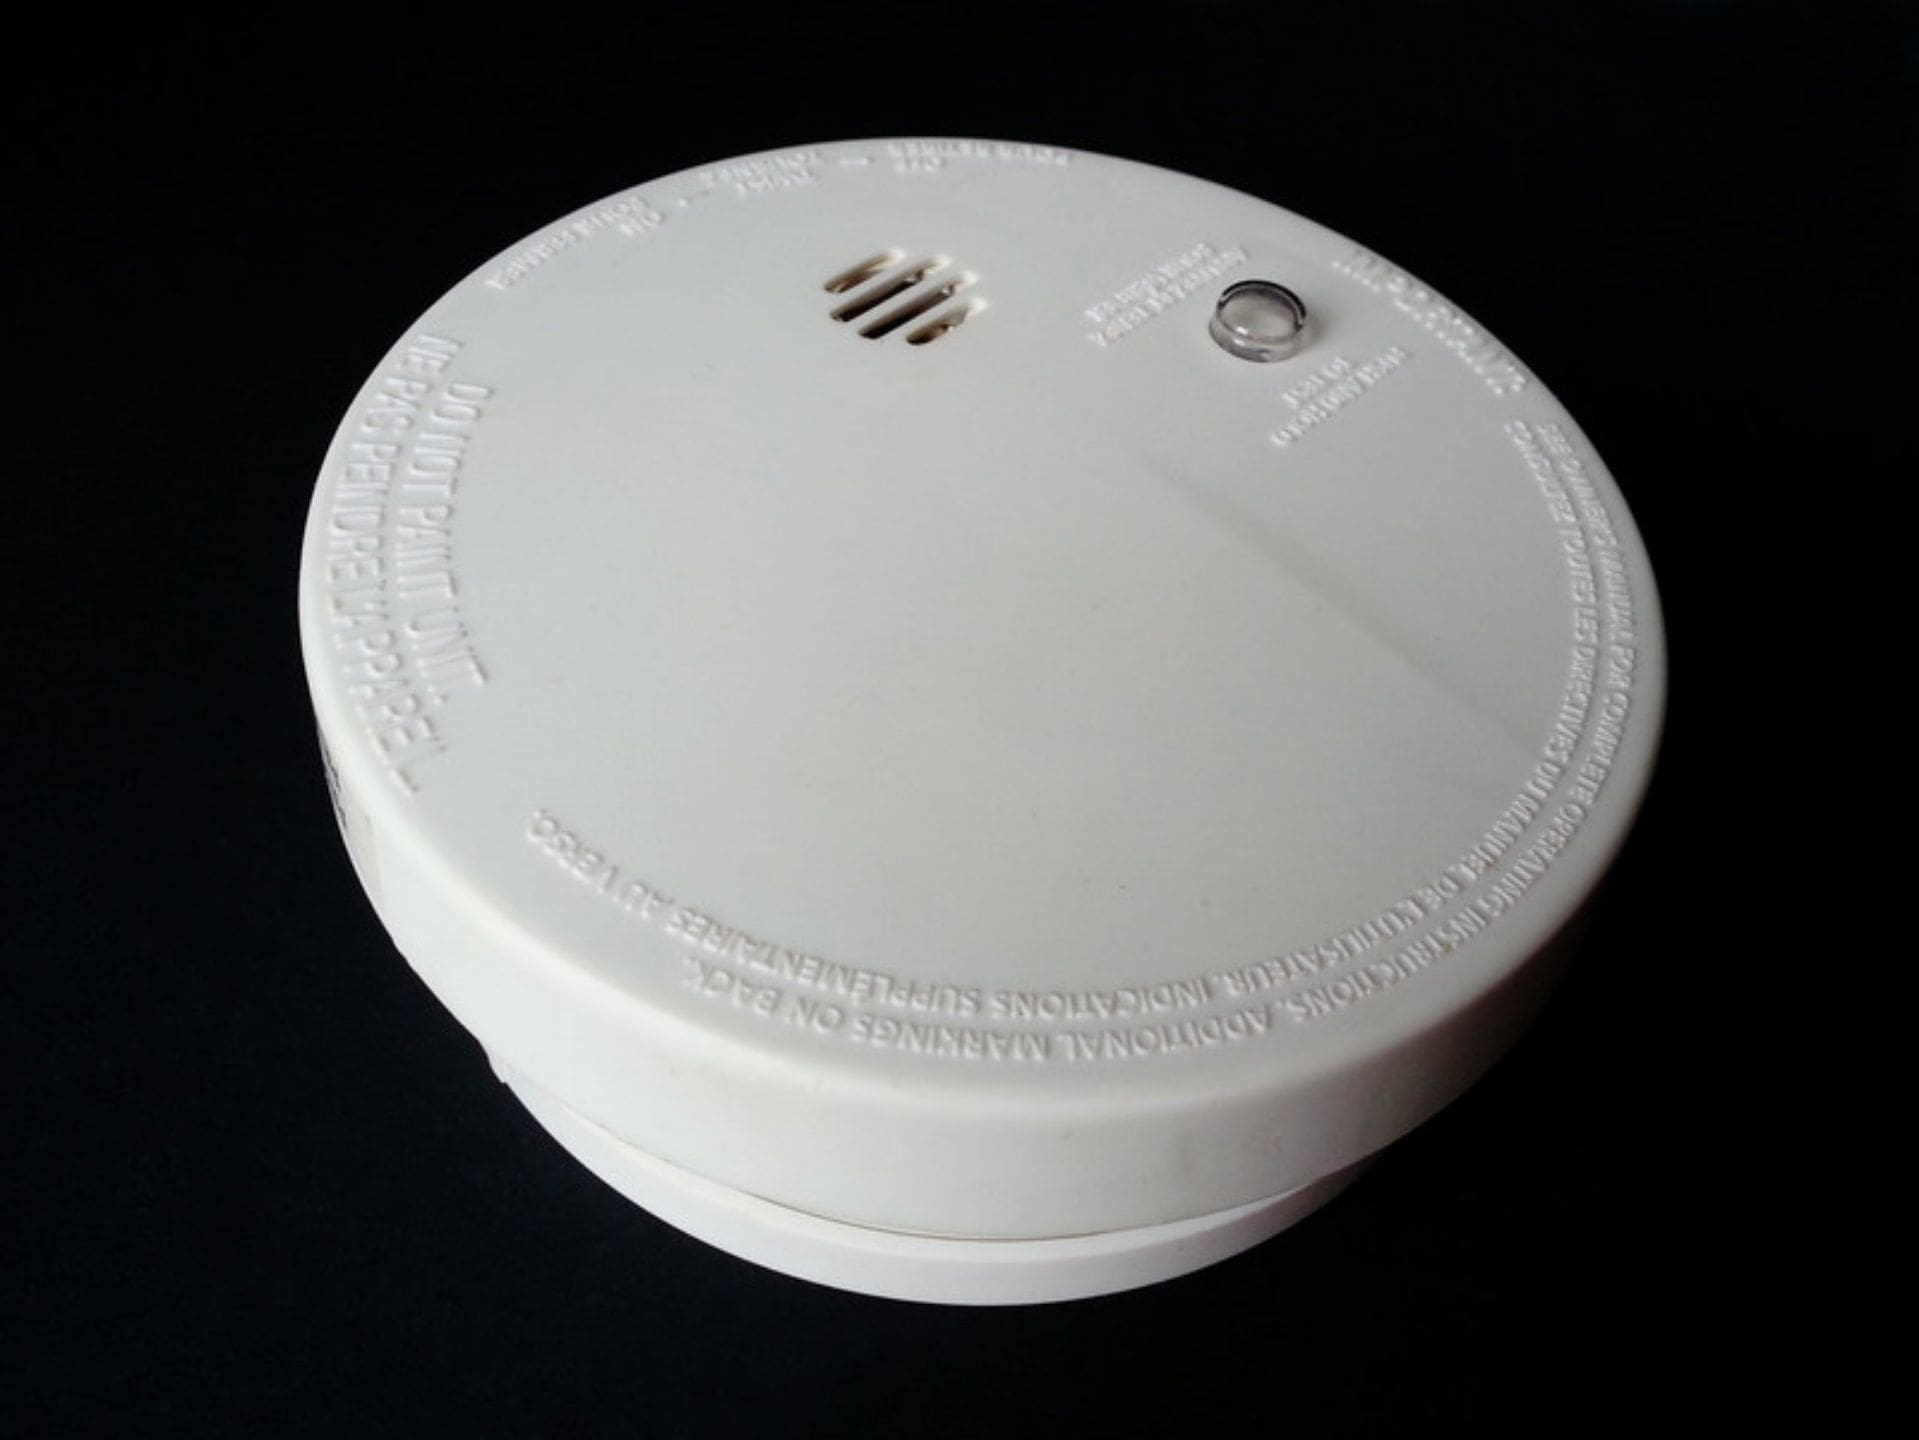 gas sensor or smoke alarm